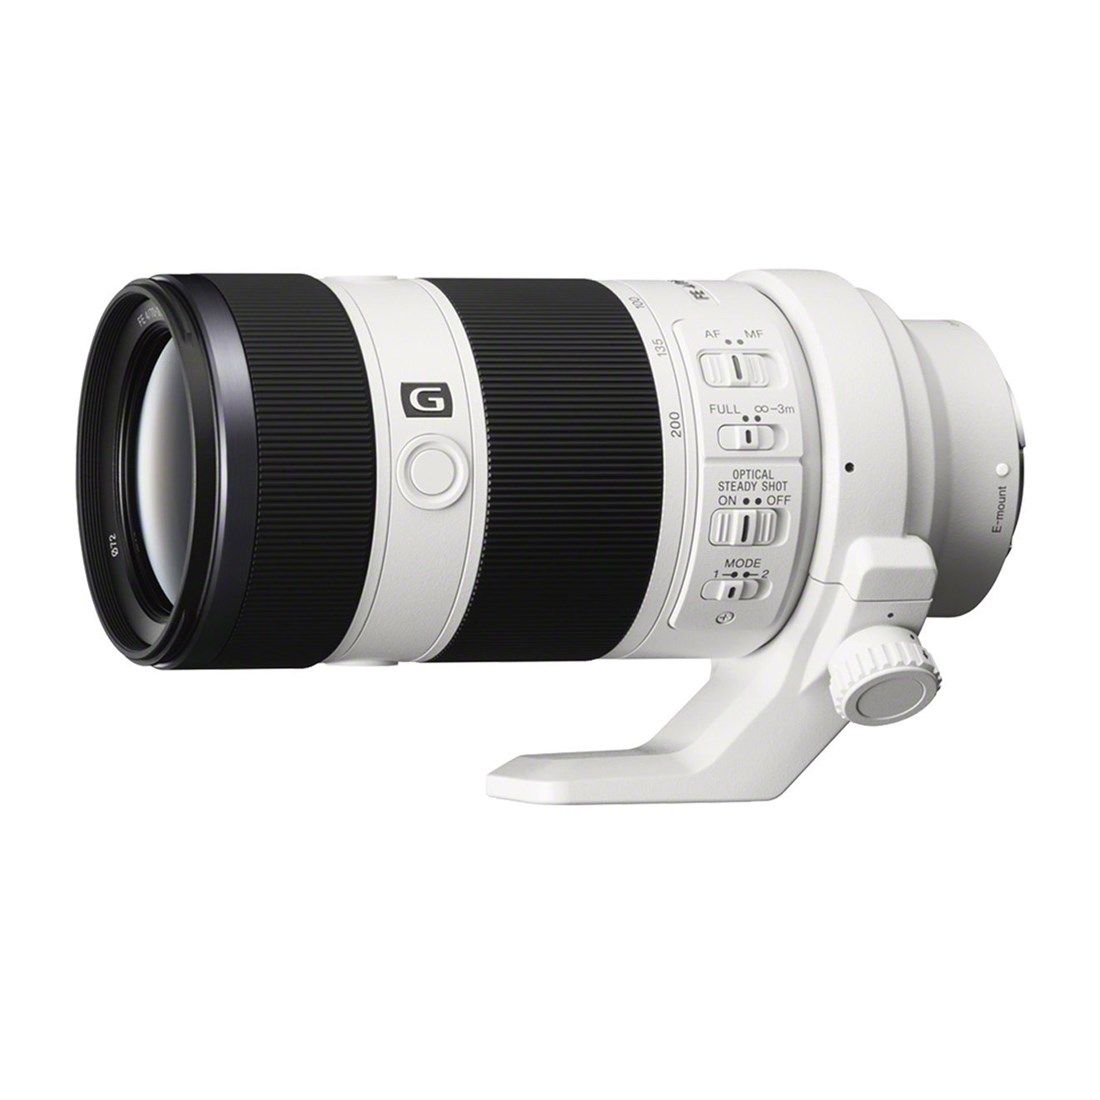 Sony 70-200mm f4.0 G OSS E Mount series Lens